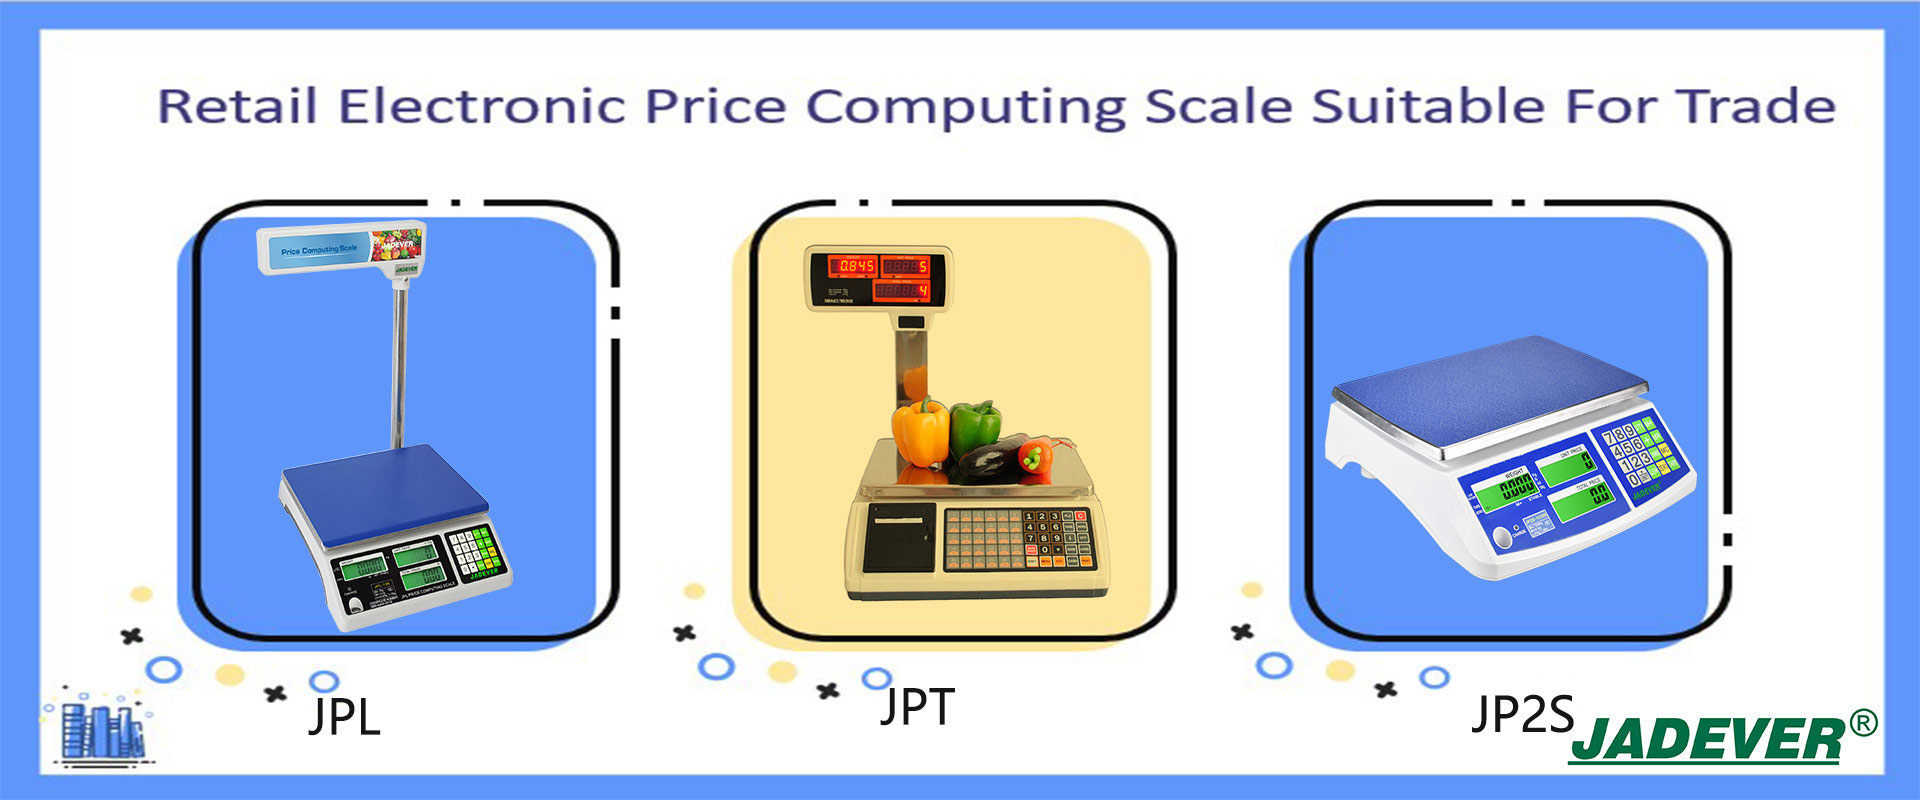 مقياس حوسبة أسعار التجزئة الإلكترونية مناسب للتجارة
